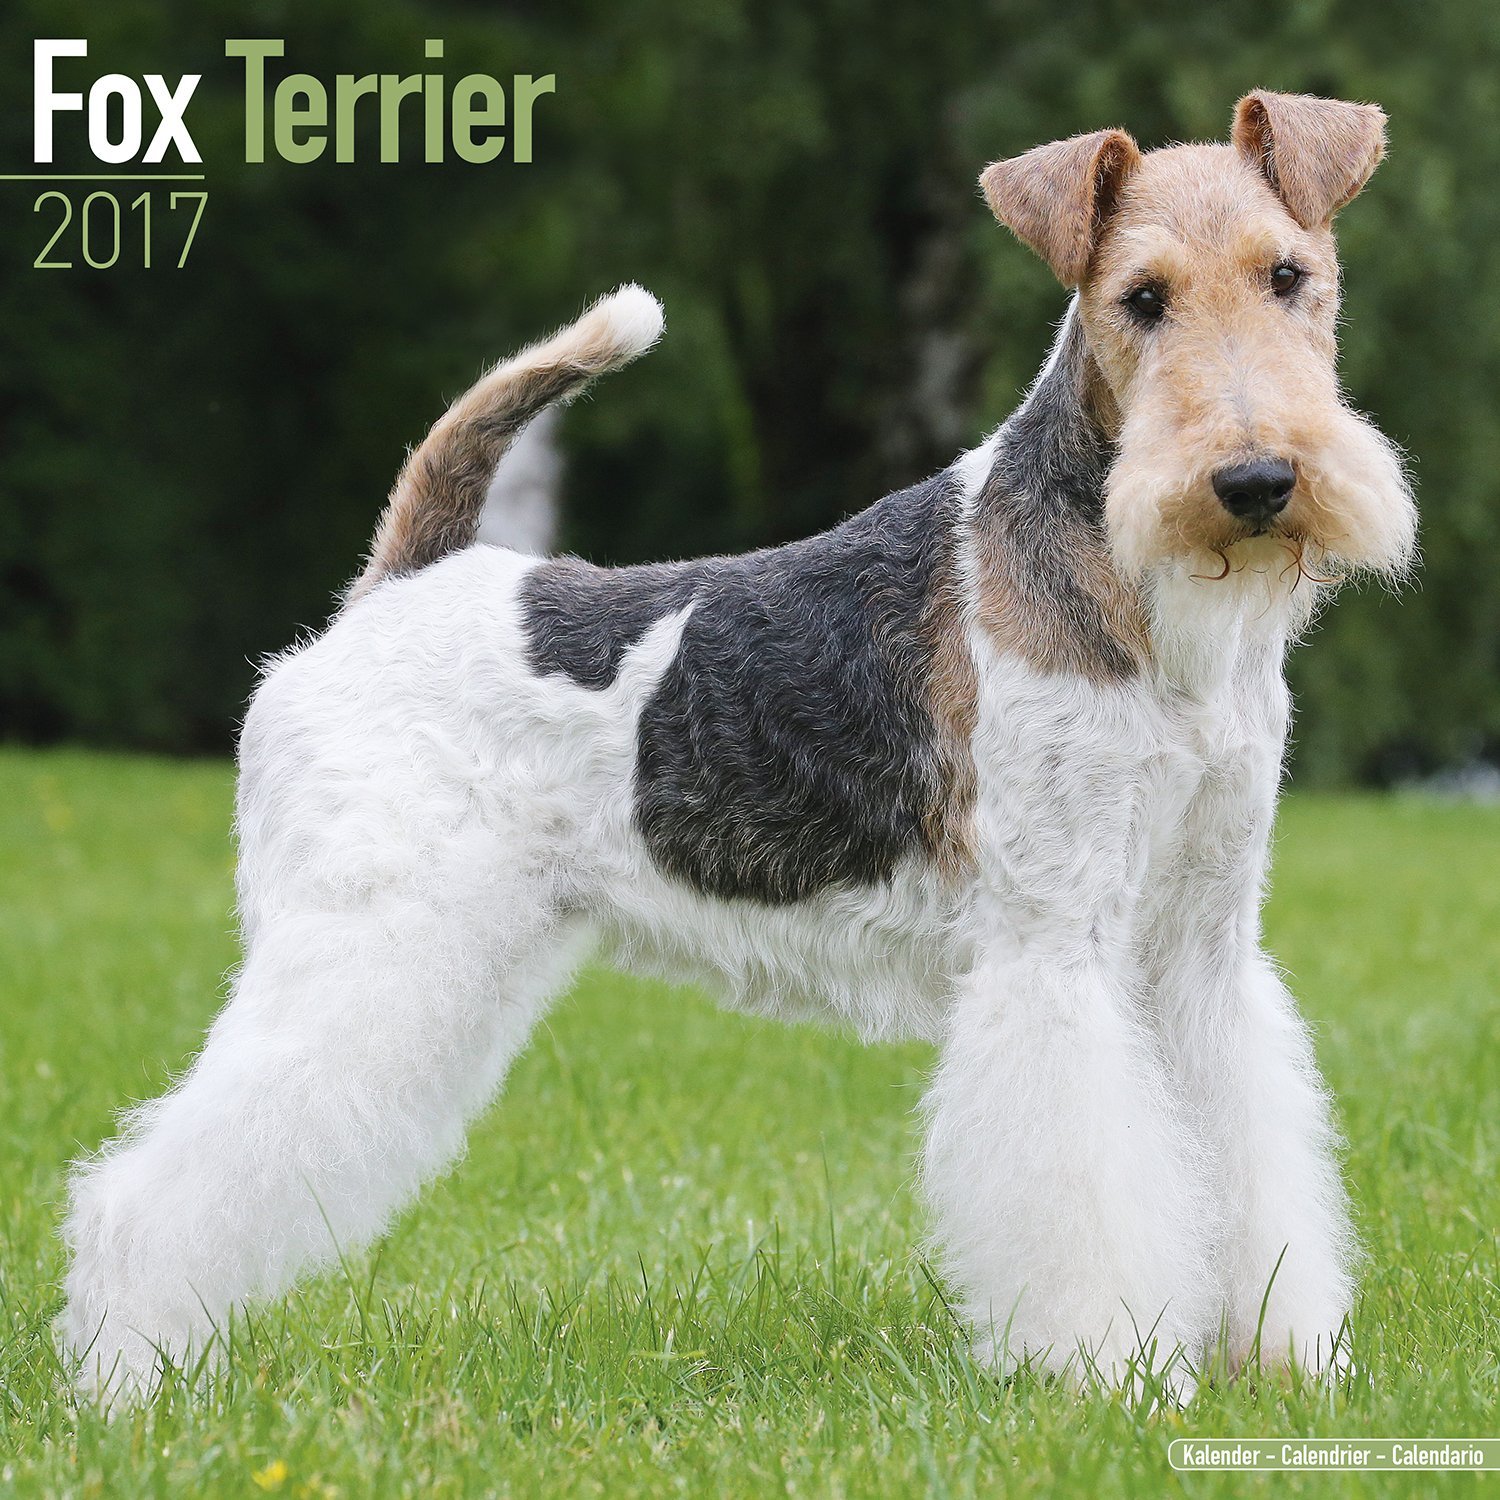 Fox Terrier Calendar 2017 - Dog Breed Calendars - 2016 - 2017 wall ...